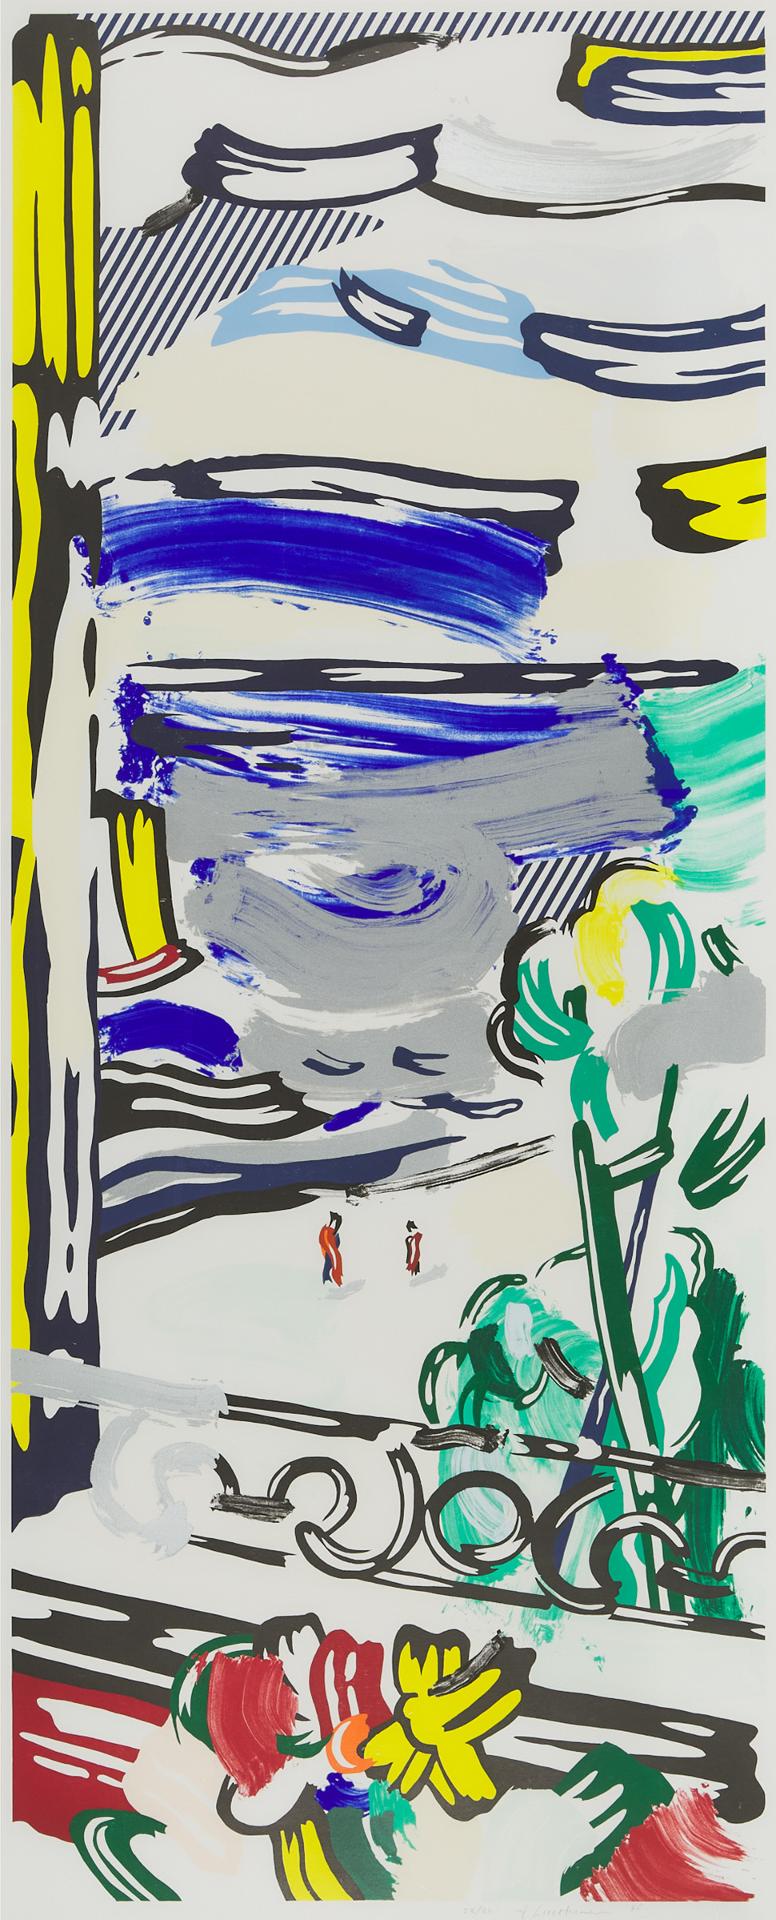 Roy Lichtenstein (1923-1997) - View From The Window (From 